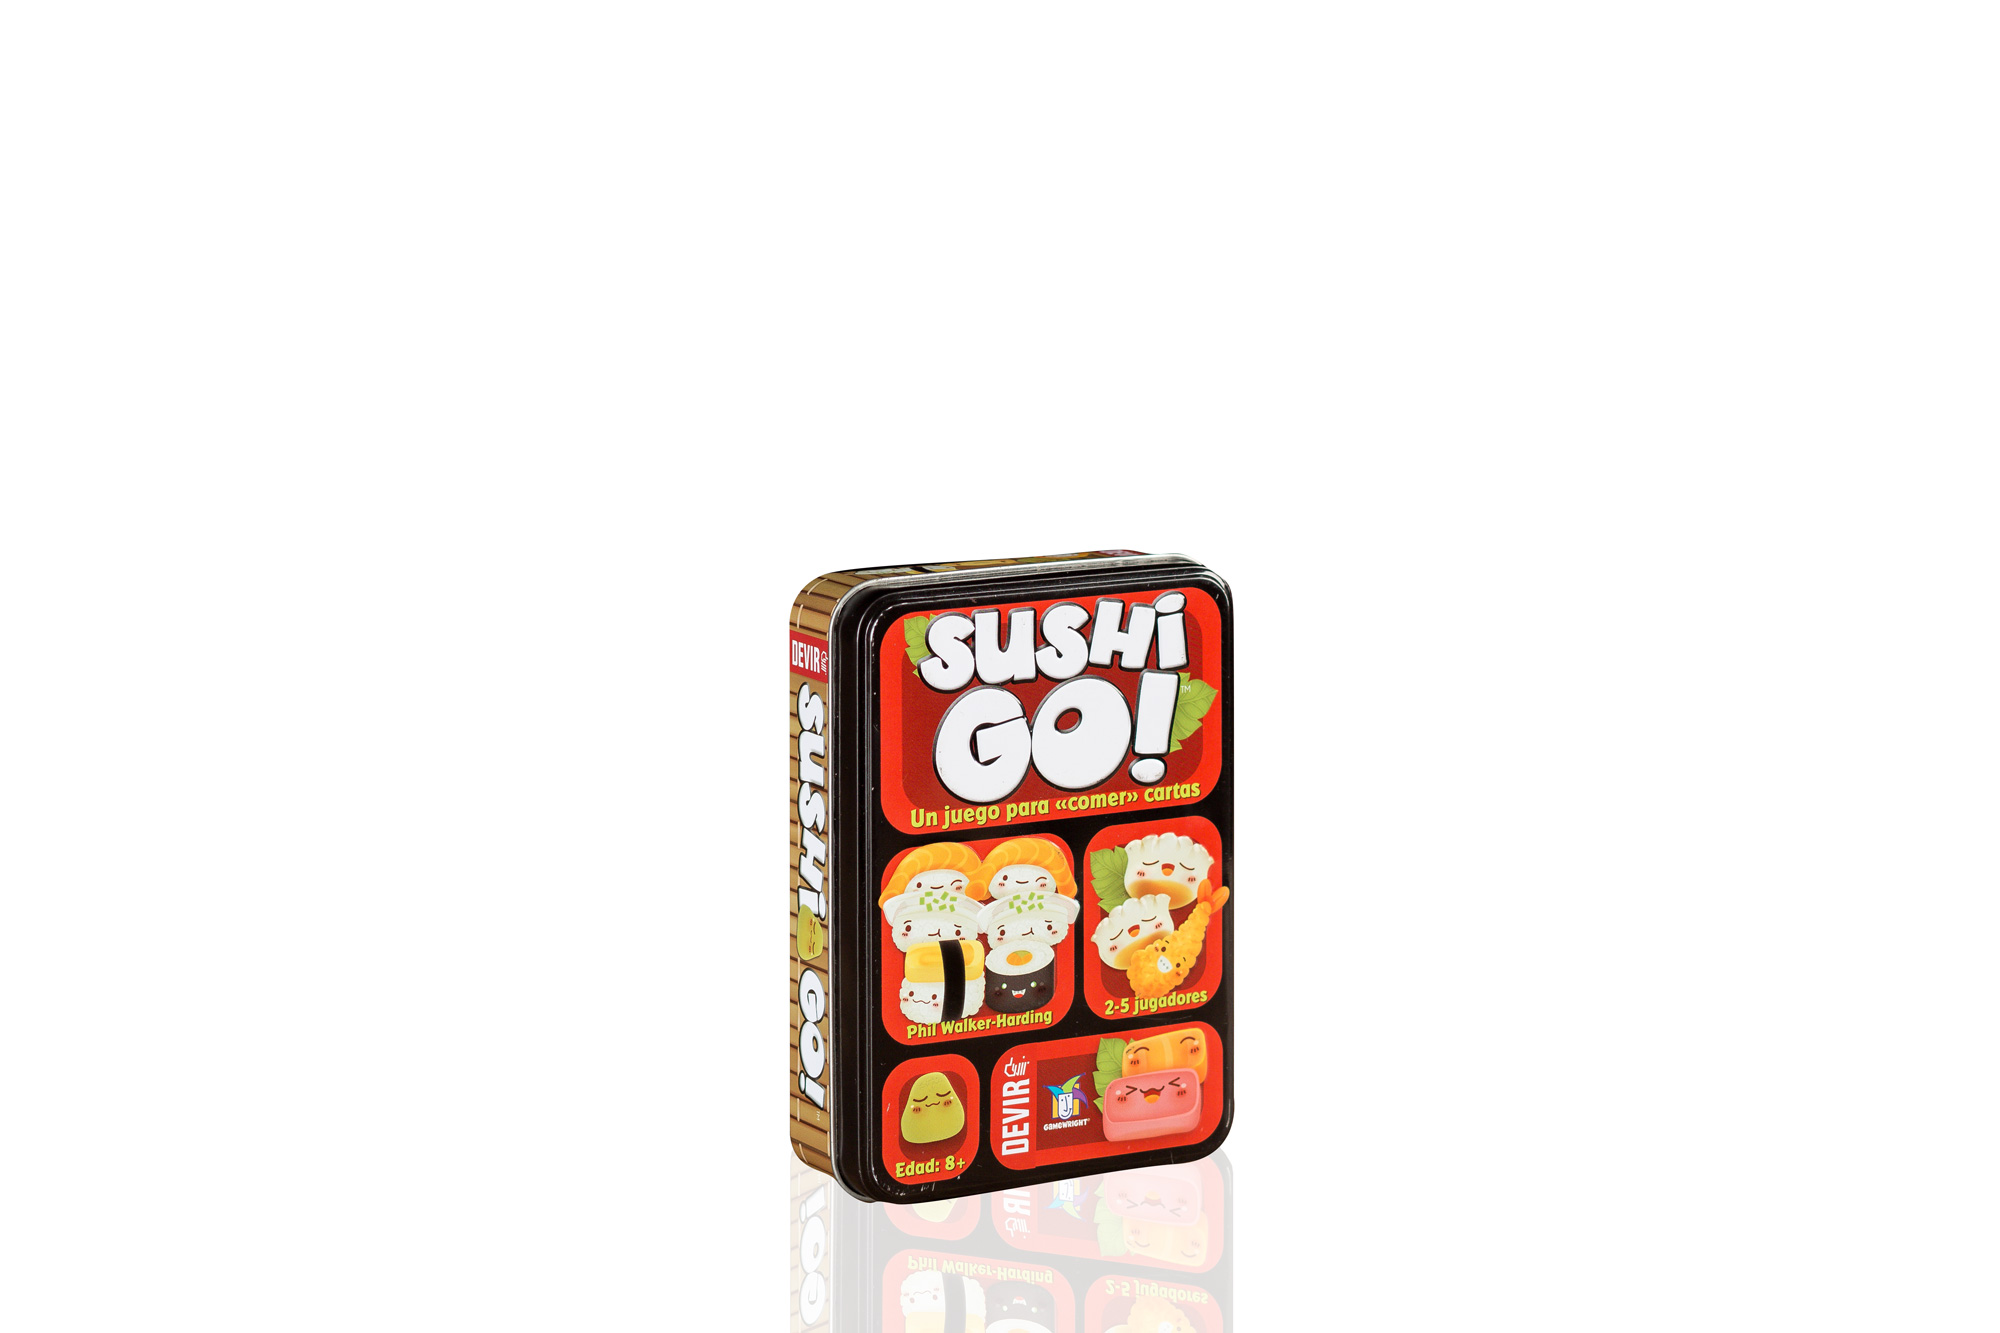 Reseña: Sushi Go!